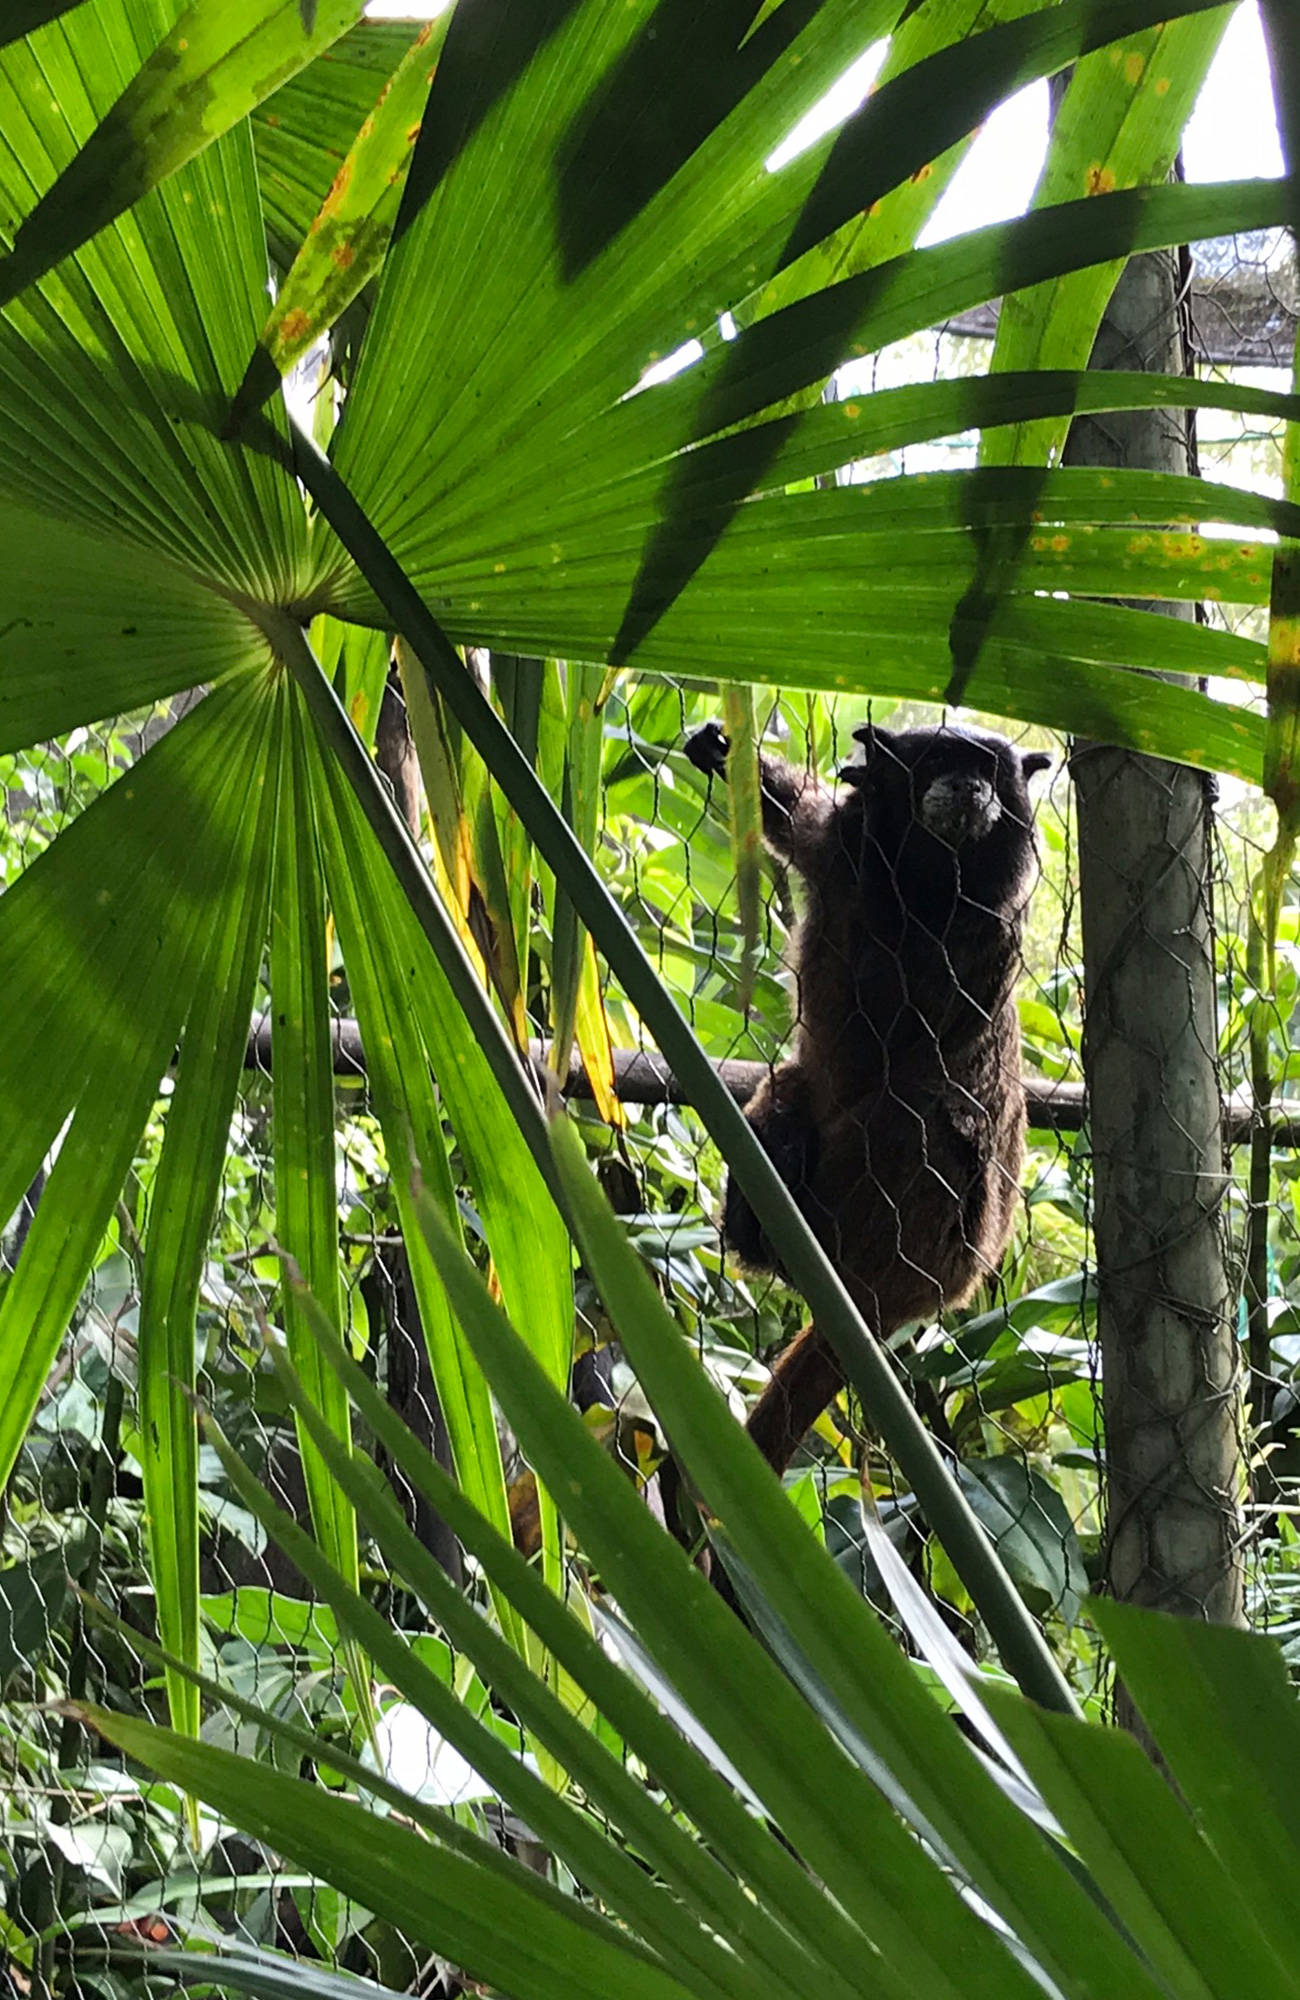 aapje hangt aan hek | 3 (vrijwilligers)projecten in kleurrijk Ecuador | KILROY